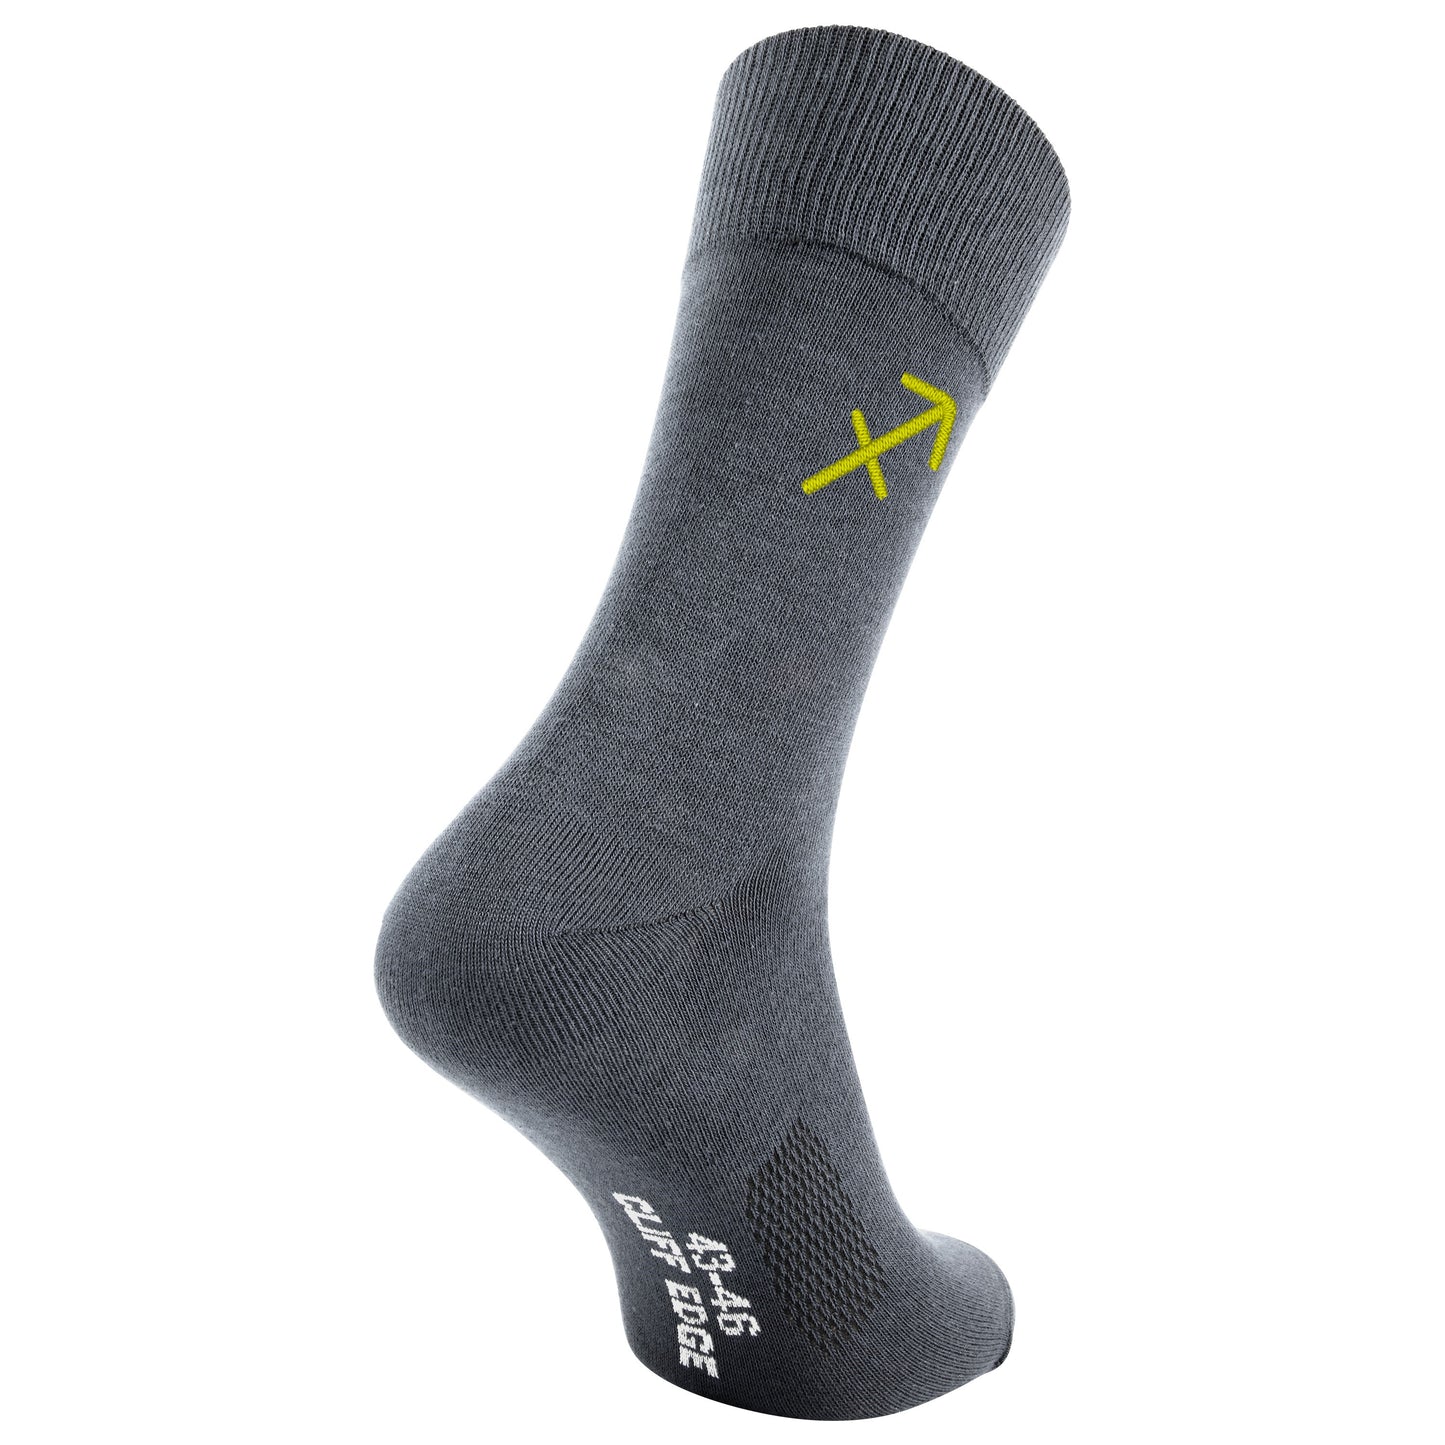 Business-Socken mit Sternzeichen Schütze-Sign und Wunschtext bestickt